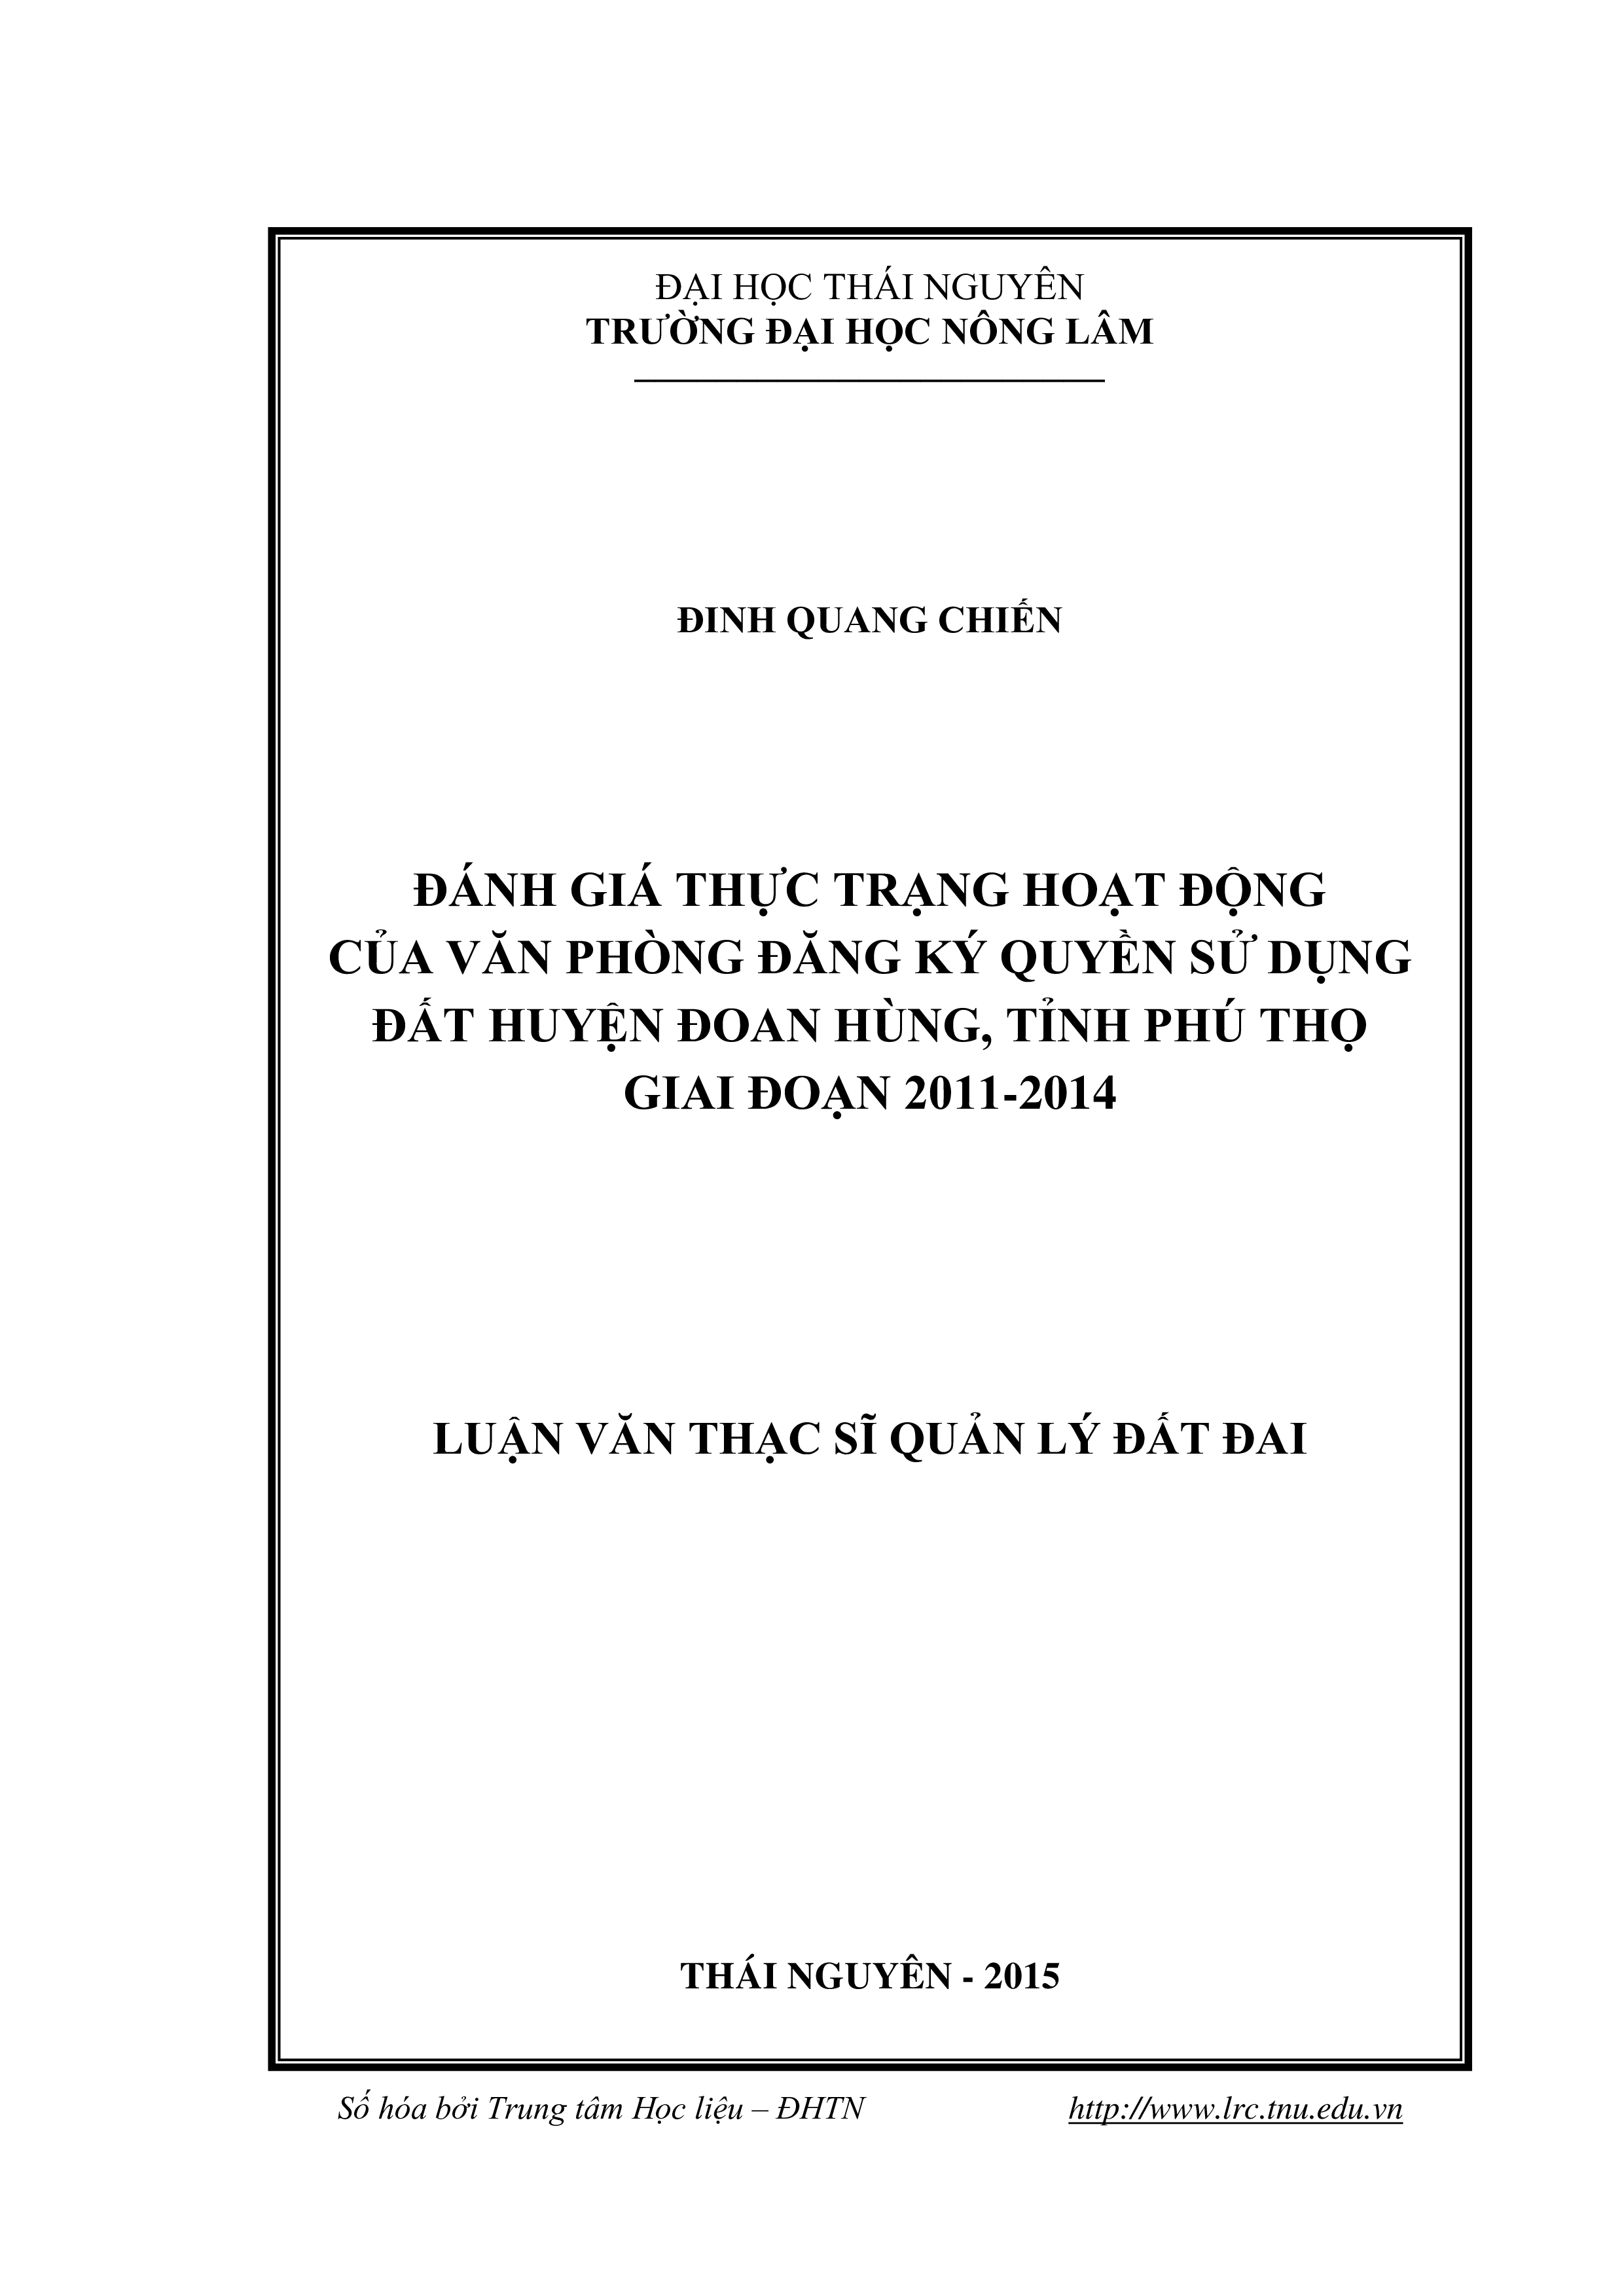 Đánh giá thực trạng hoạt động của Văn phòng đăng ký quyền sử dụng đất huyện Đoan Hùng, tỉnh Phú Thọ  giai đoạn 2011-2014